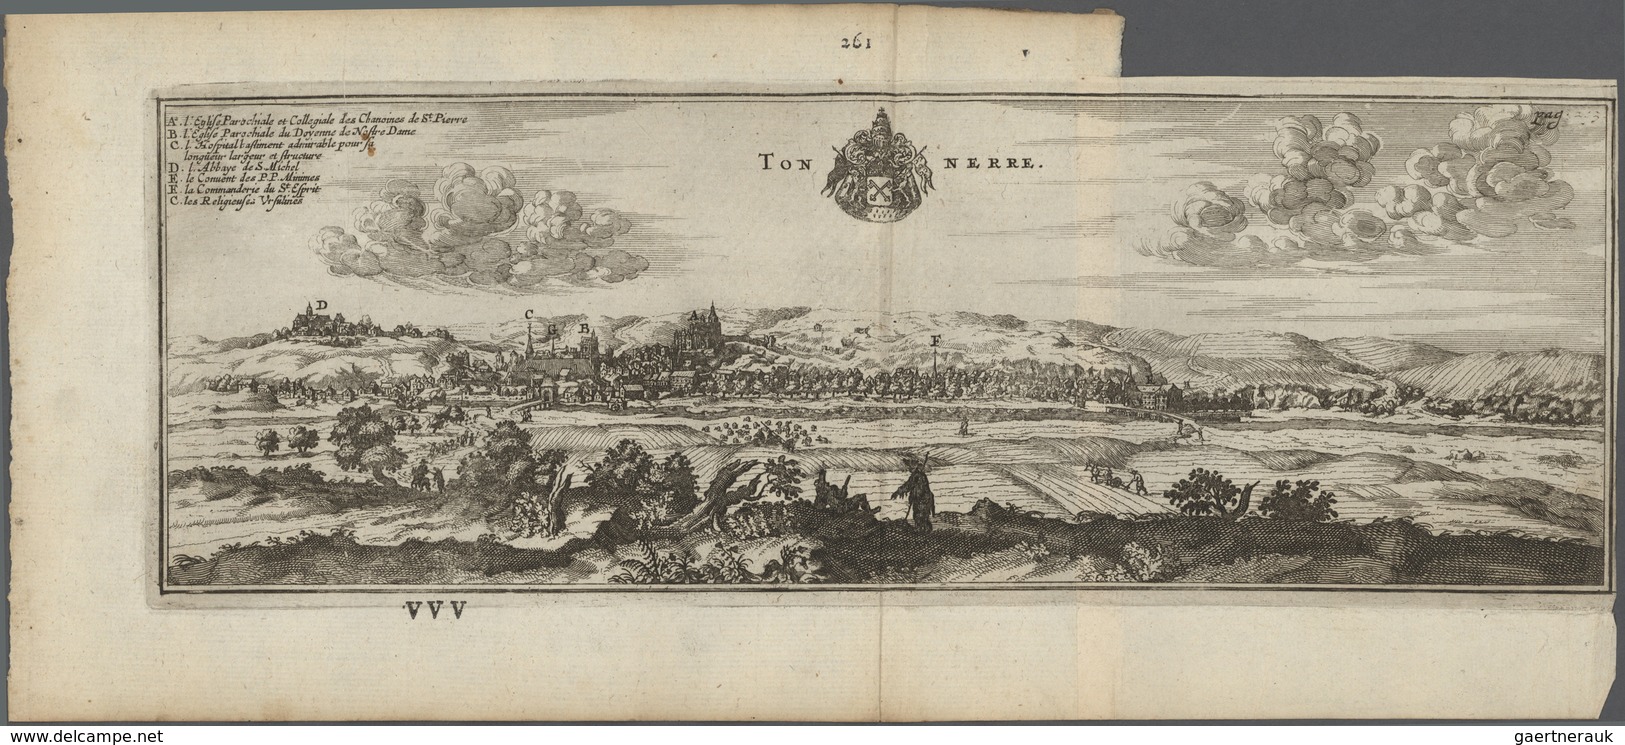 Landkarten und Stiche: 1580/1820 (ca). Bestand von über 130 alten Landkarten, meist colorierte Stich